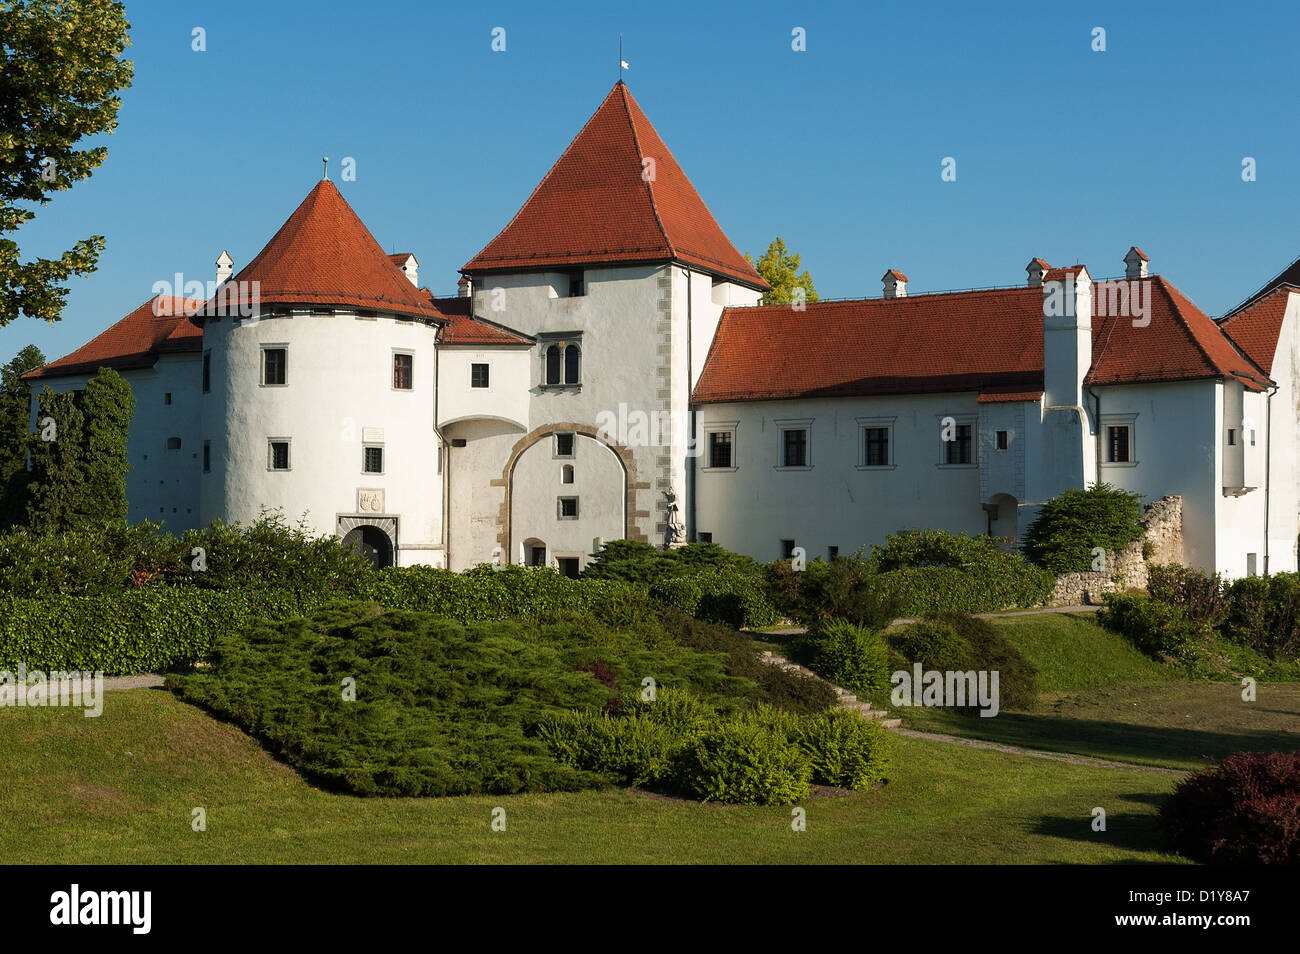 Elk192-1362, Varazdin, Croatie Stari Grad (vieille ville) Musée, forteresse, 14e-15e c Banque D'Images